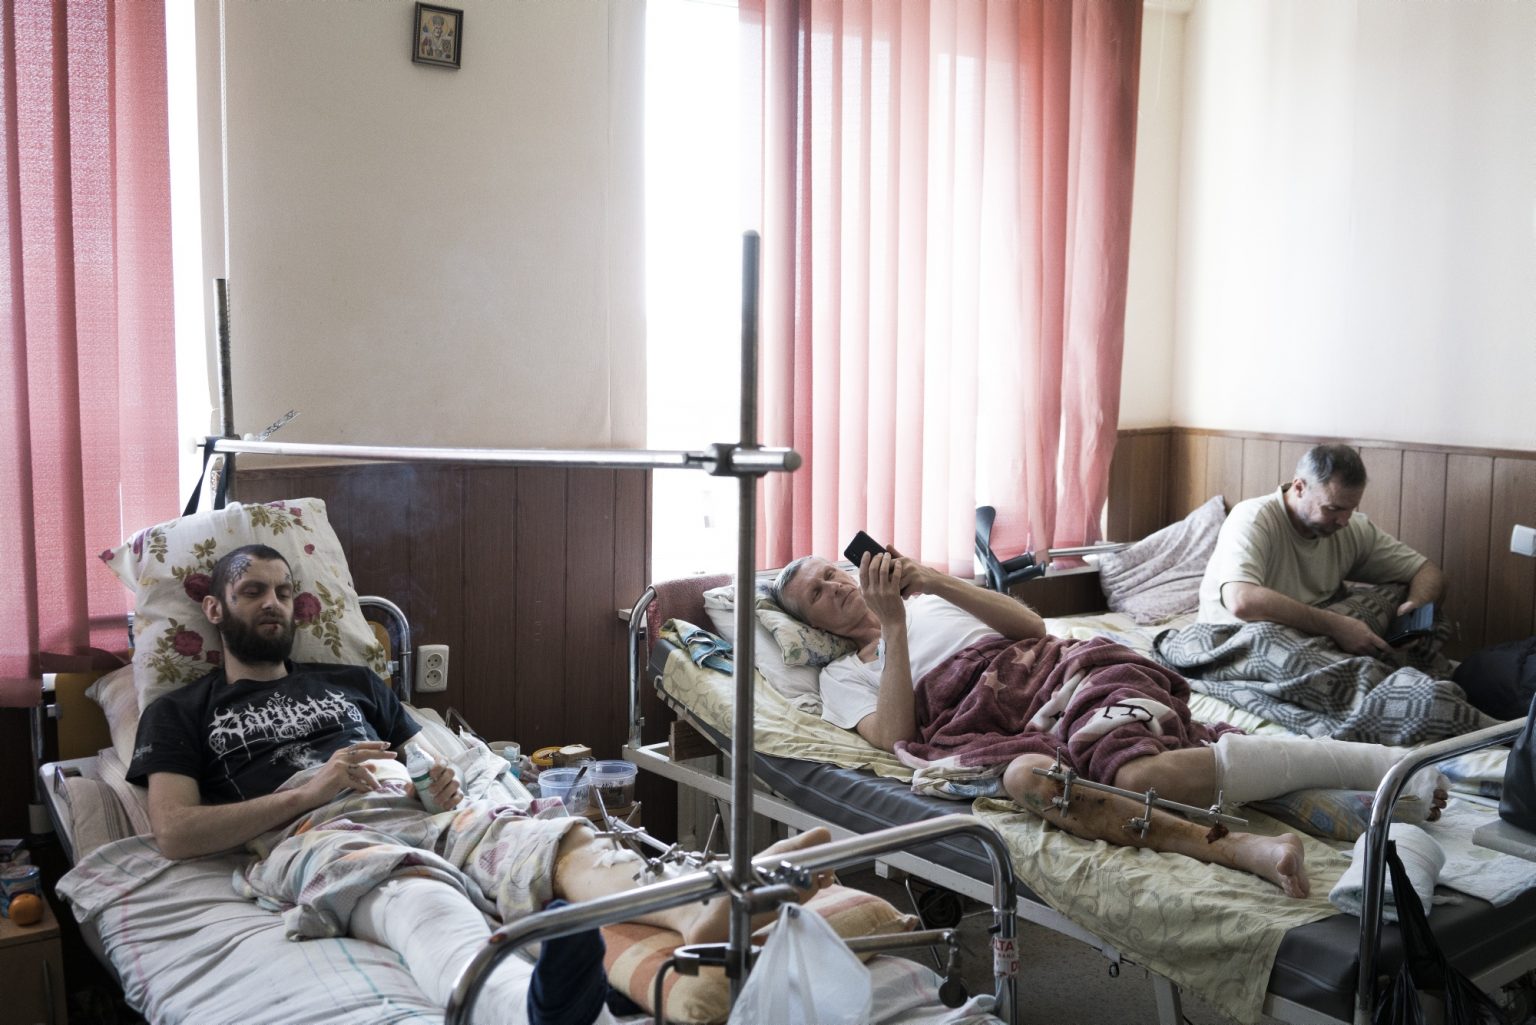 UKRAINE, Kharkiv. March 17, 2022 - Men injured by shelling lie in beds in a hospital in Kharkiv.